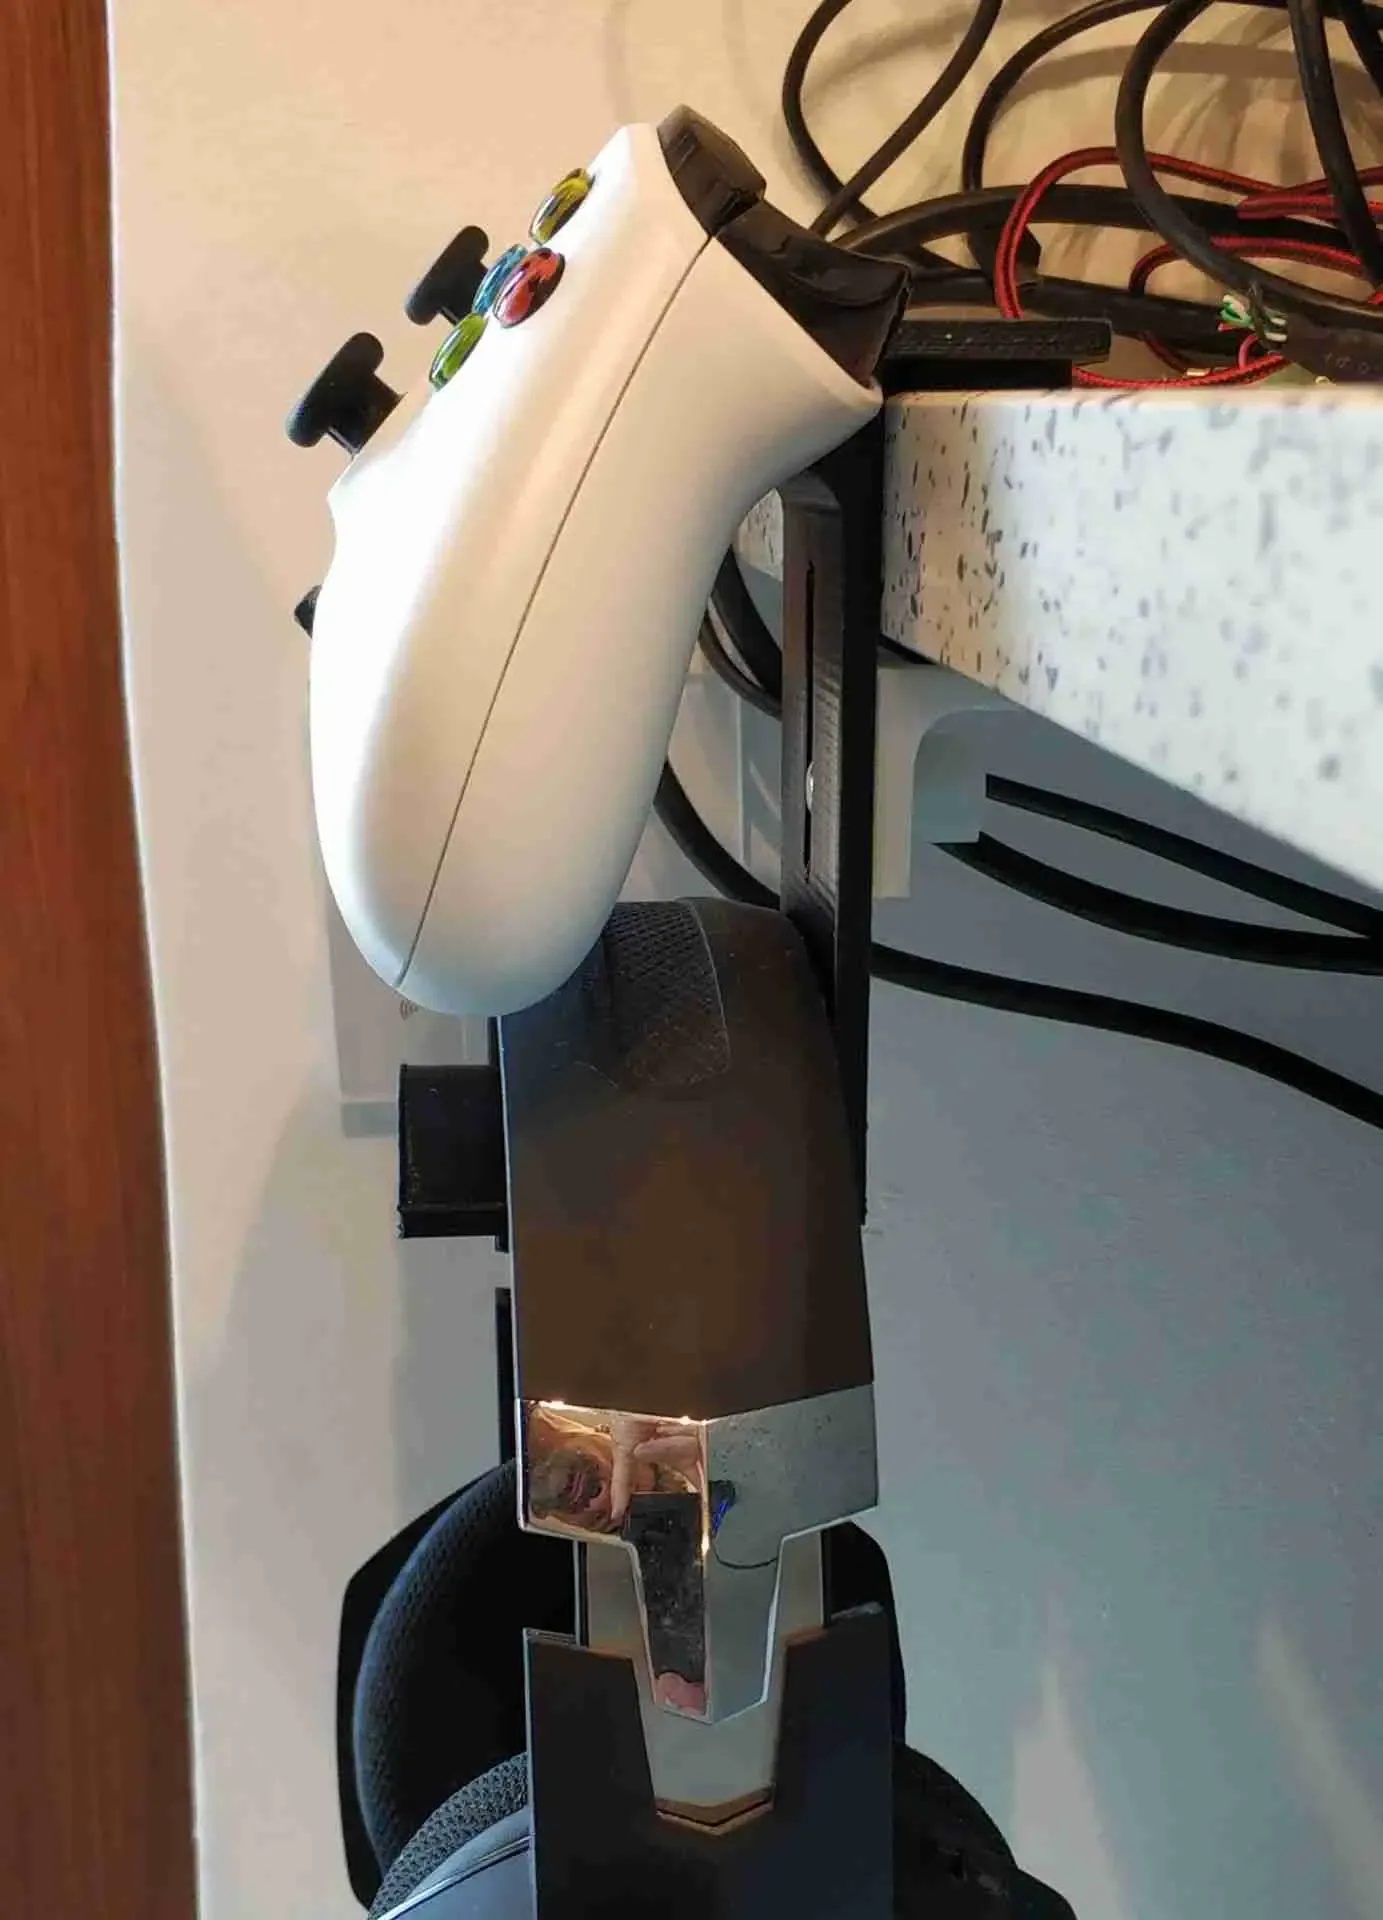 Xbox one - Supporto per cuffie e pad